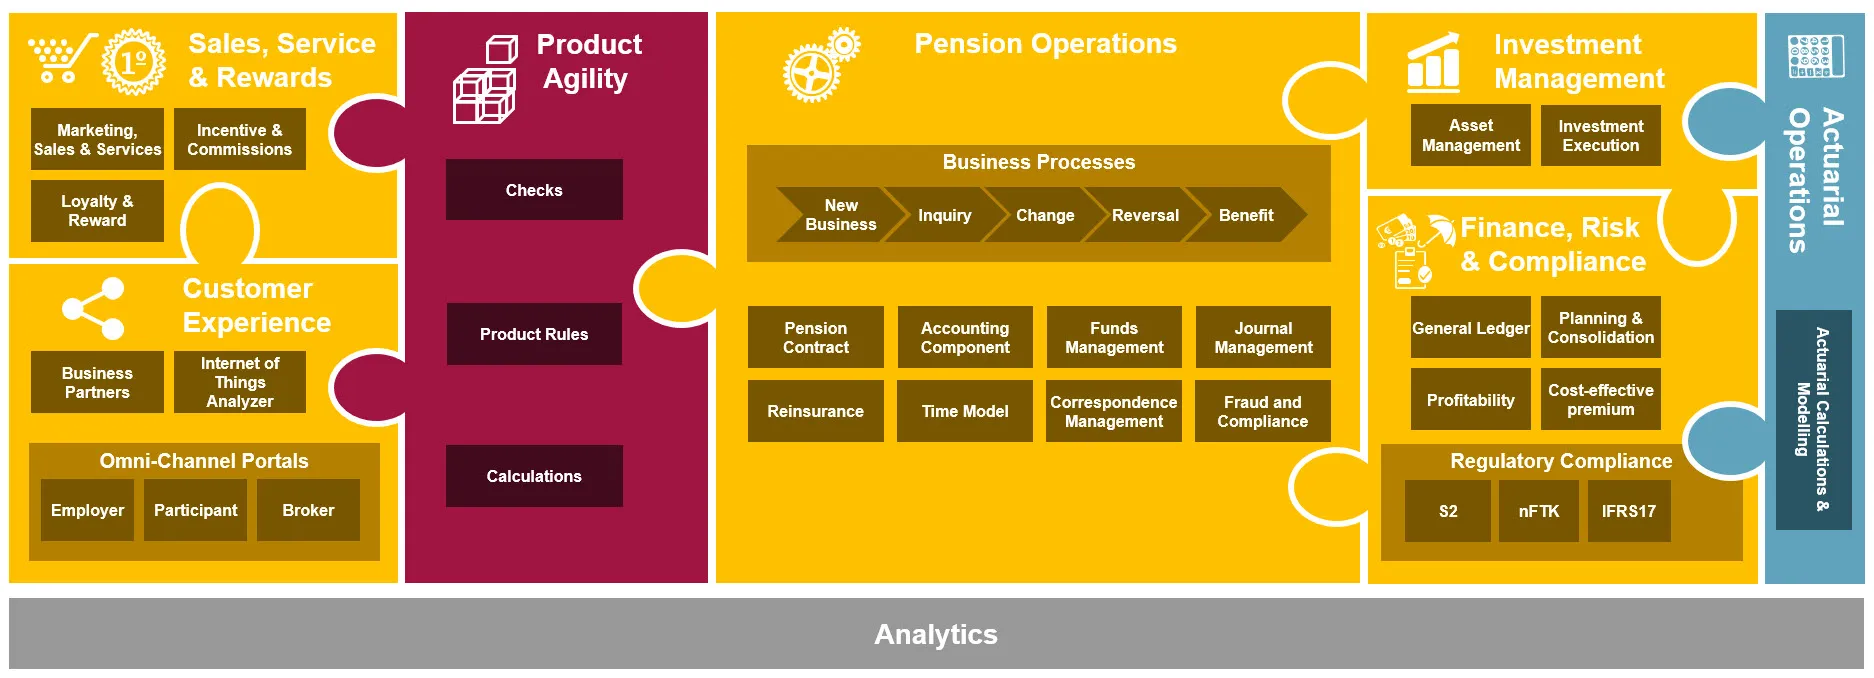 Pension Administration Solution Based on SAP Platform